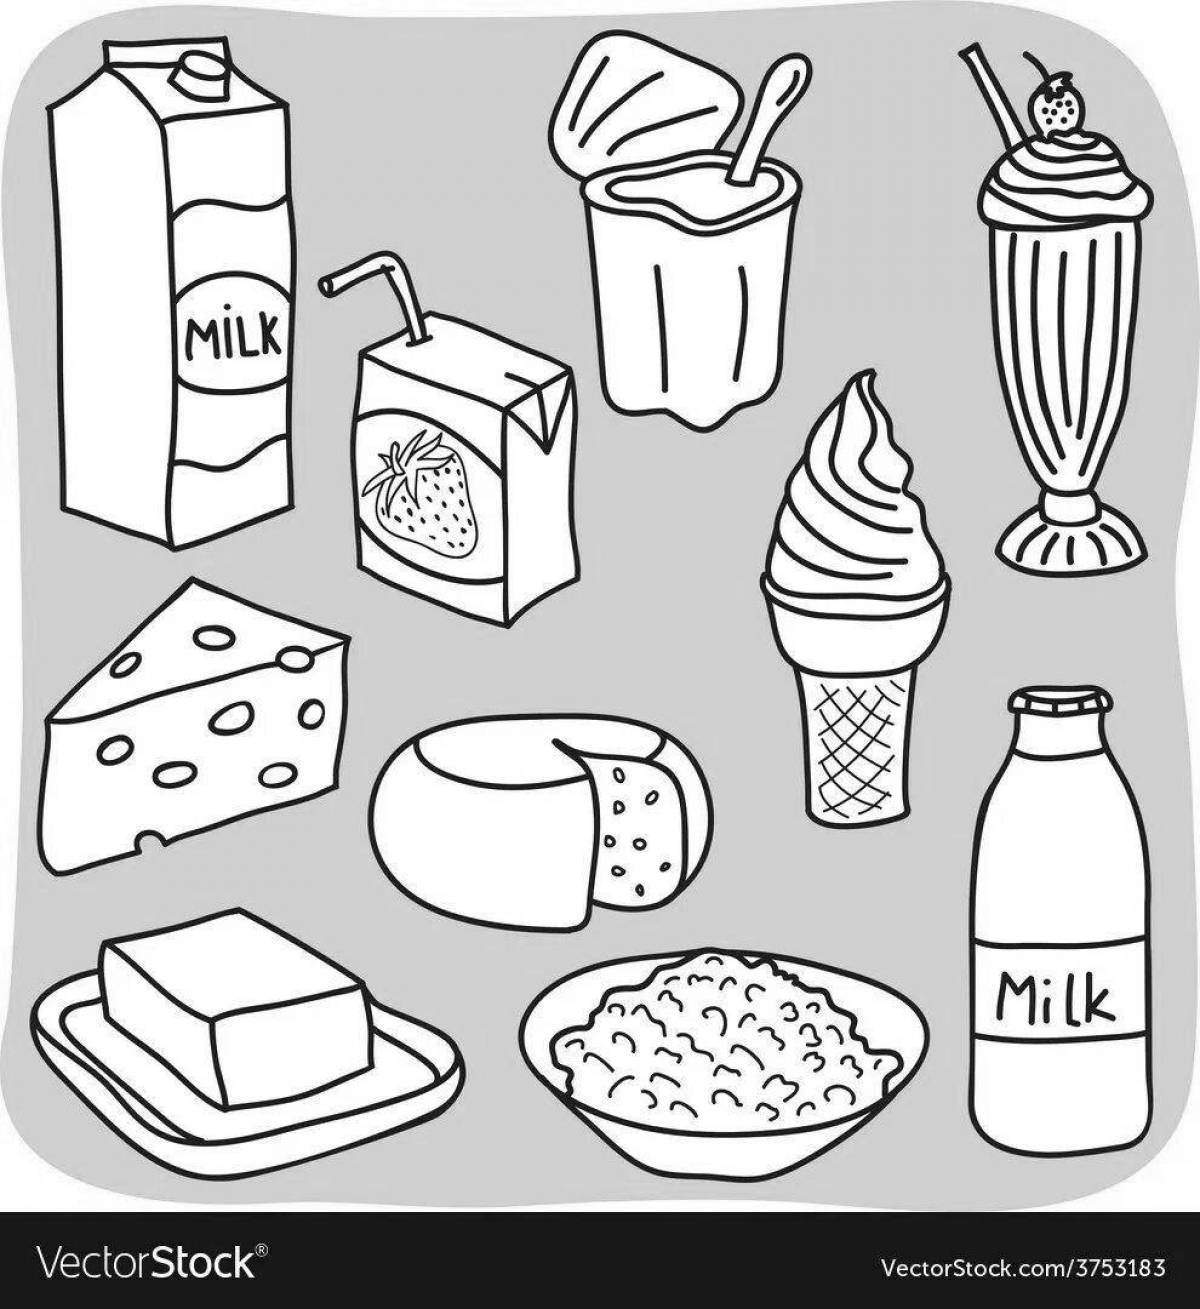 Молочные продукты для детей #11